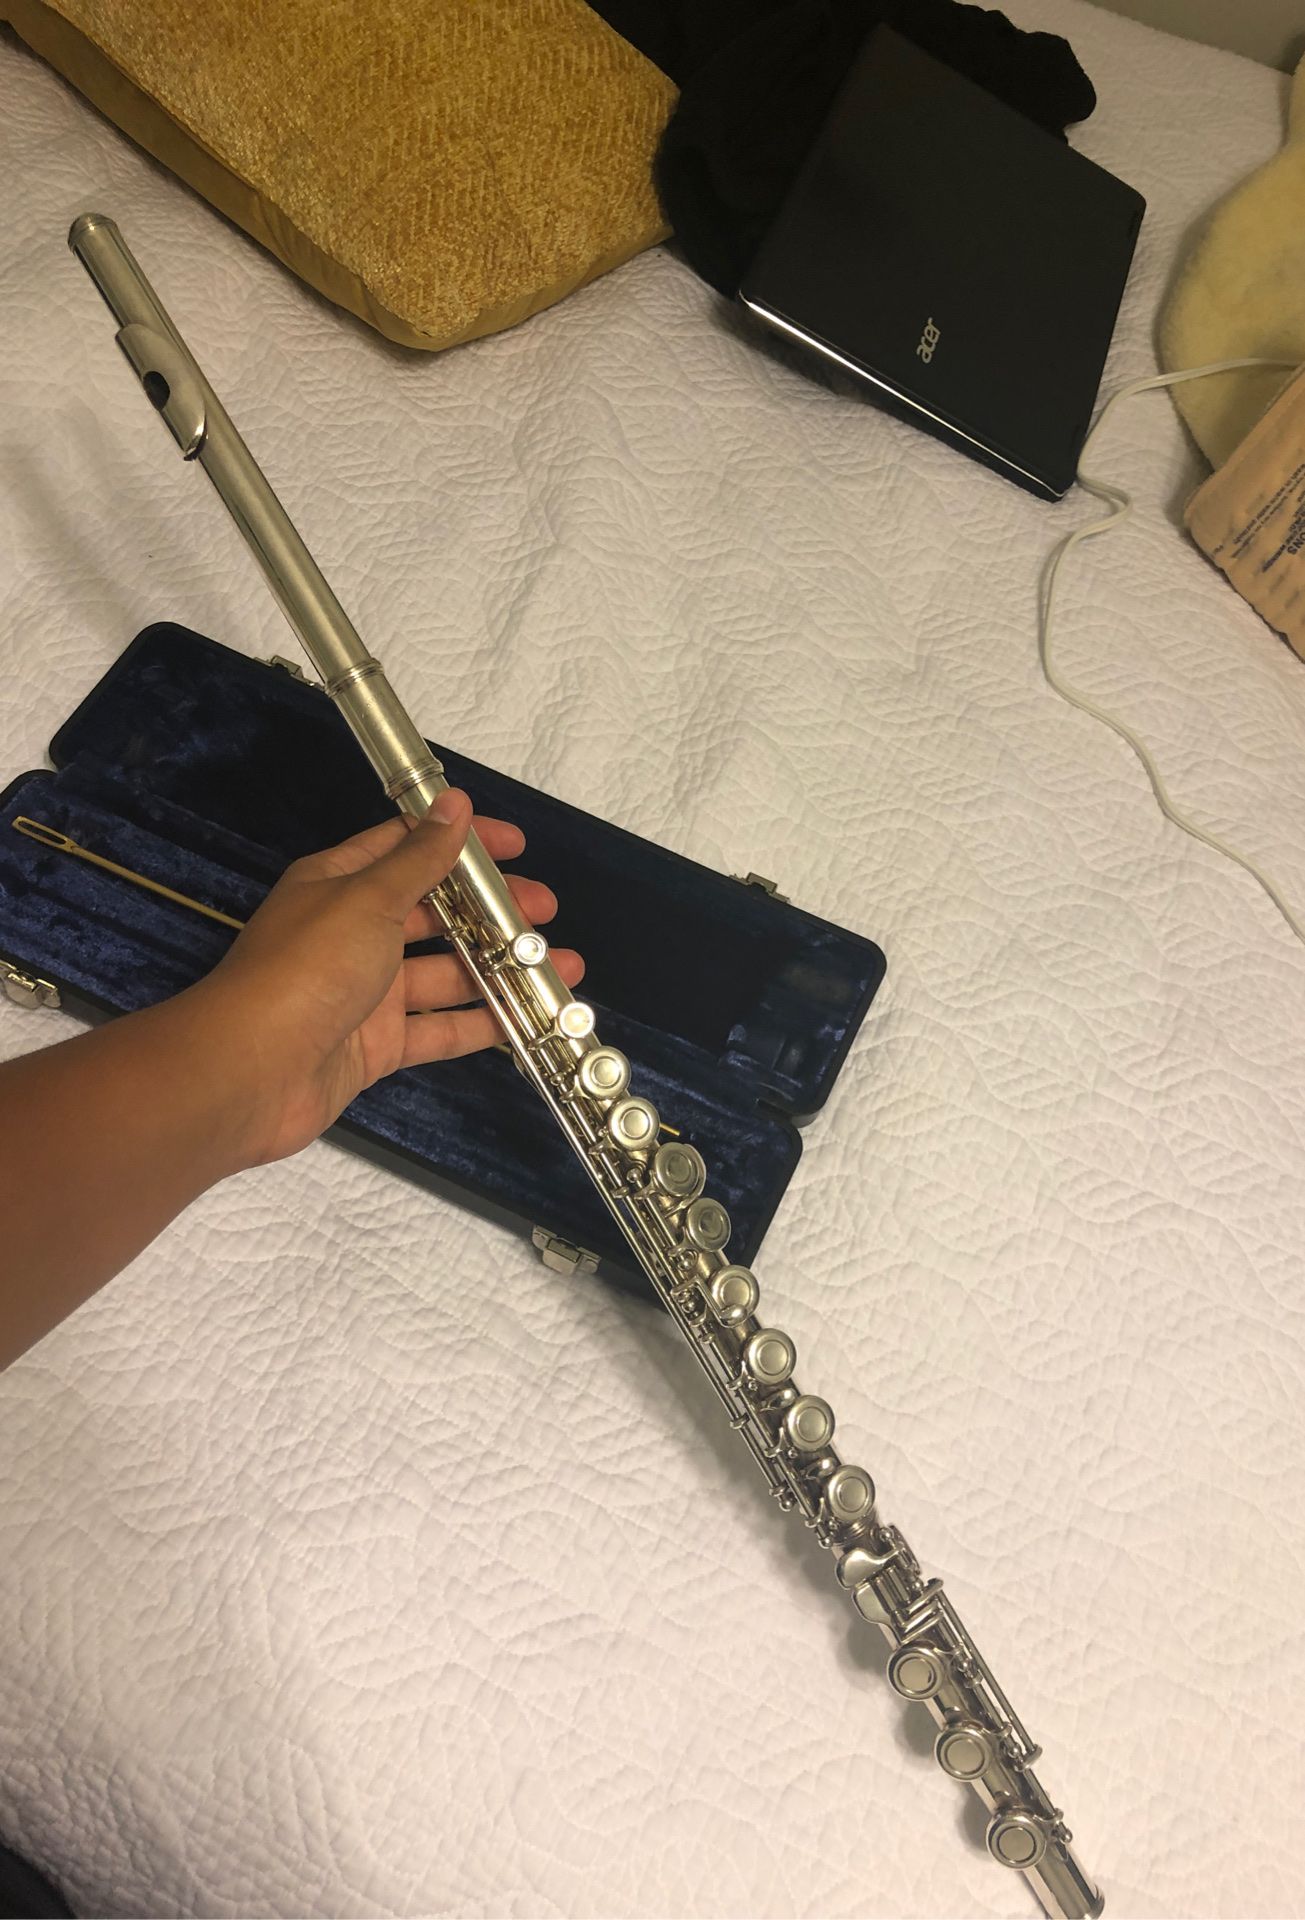 Flute (vintage armstrong model 95 - 1984)